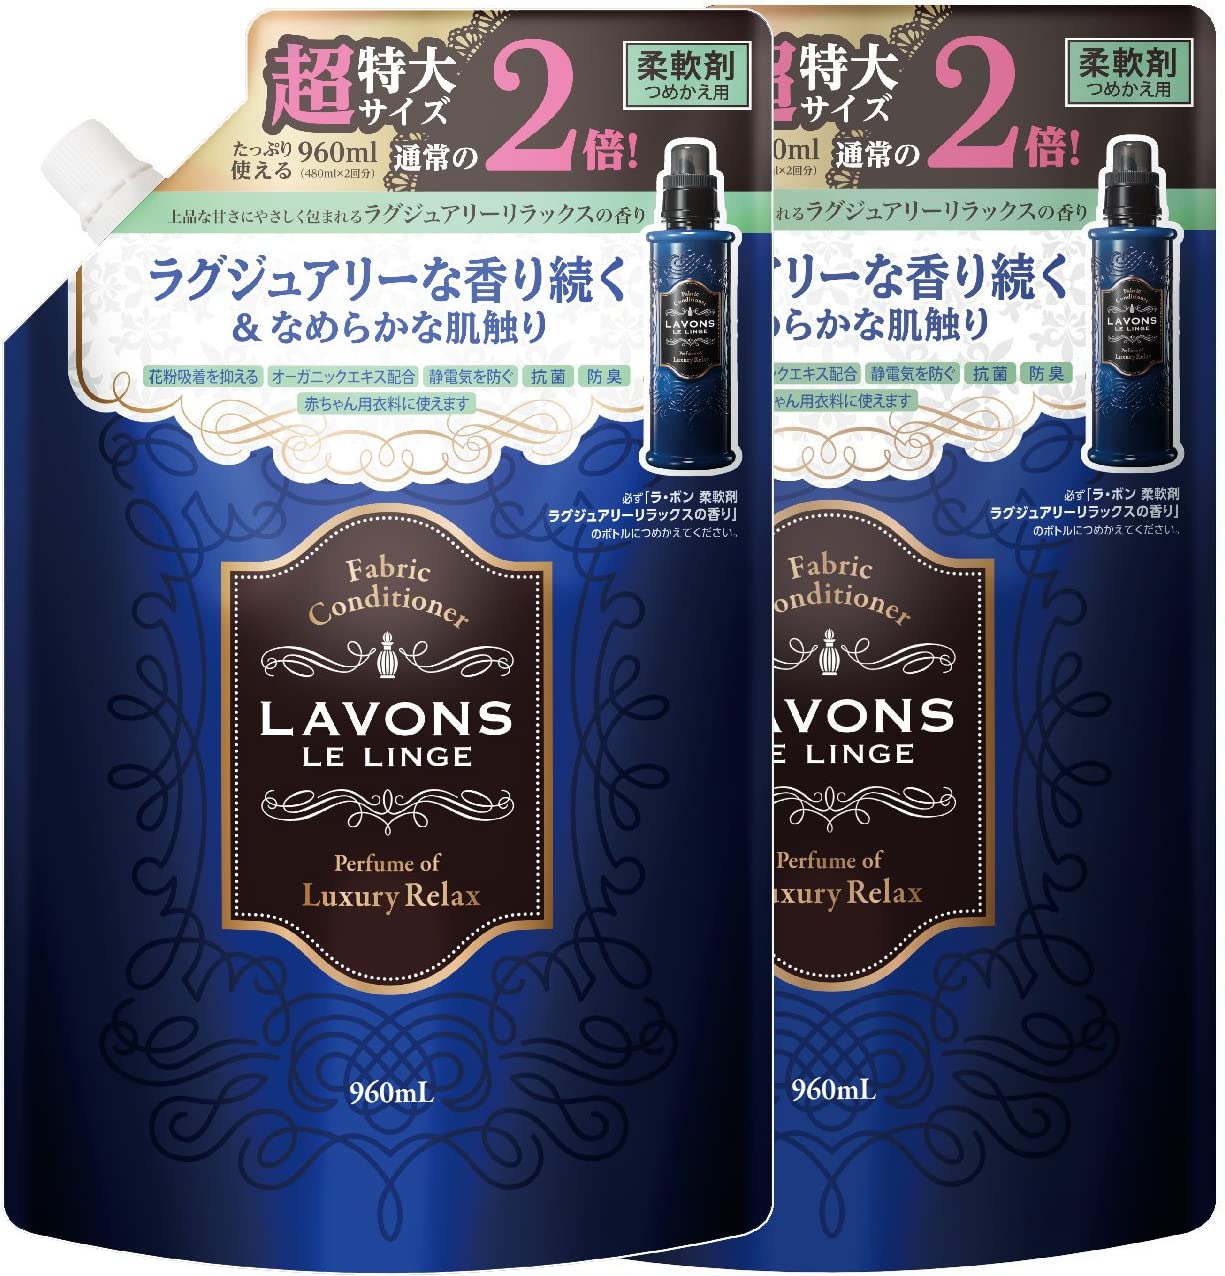 ラボン (Lavons) 柔軟剤詰替え ラグジュアリーリラックスの香り大容量 2個